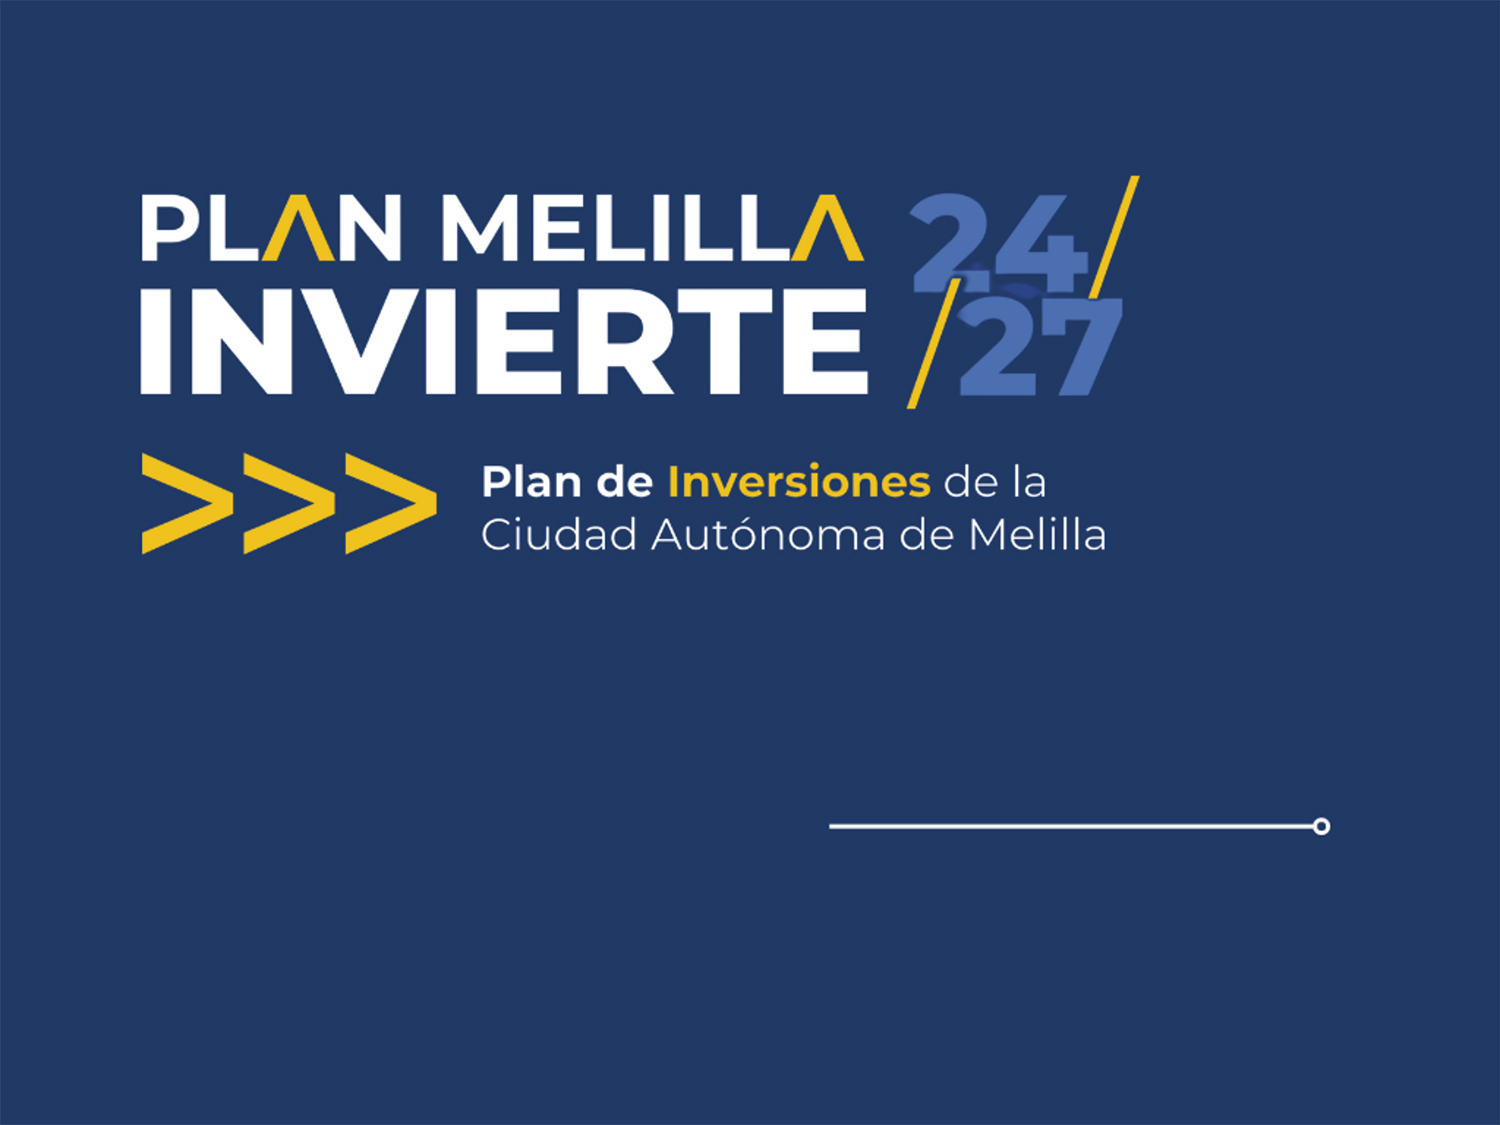 Campaa Plan Melilla Invierte 24/27